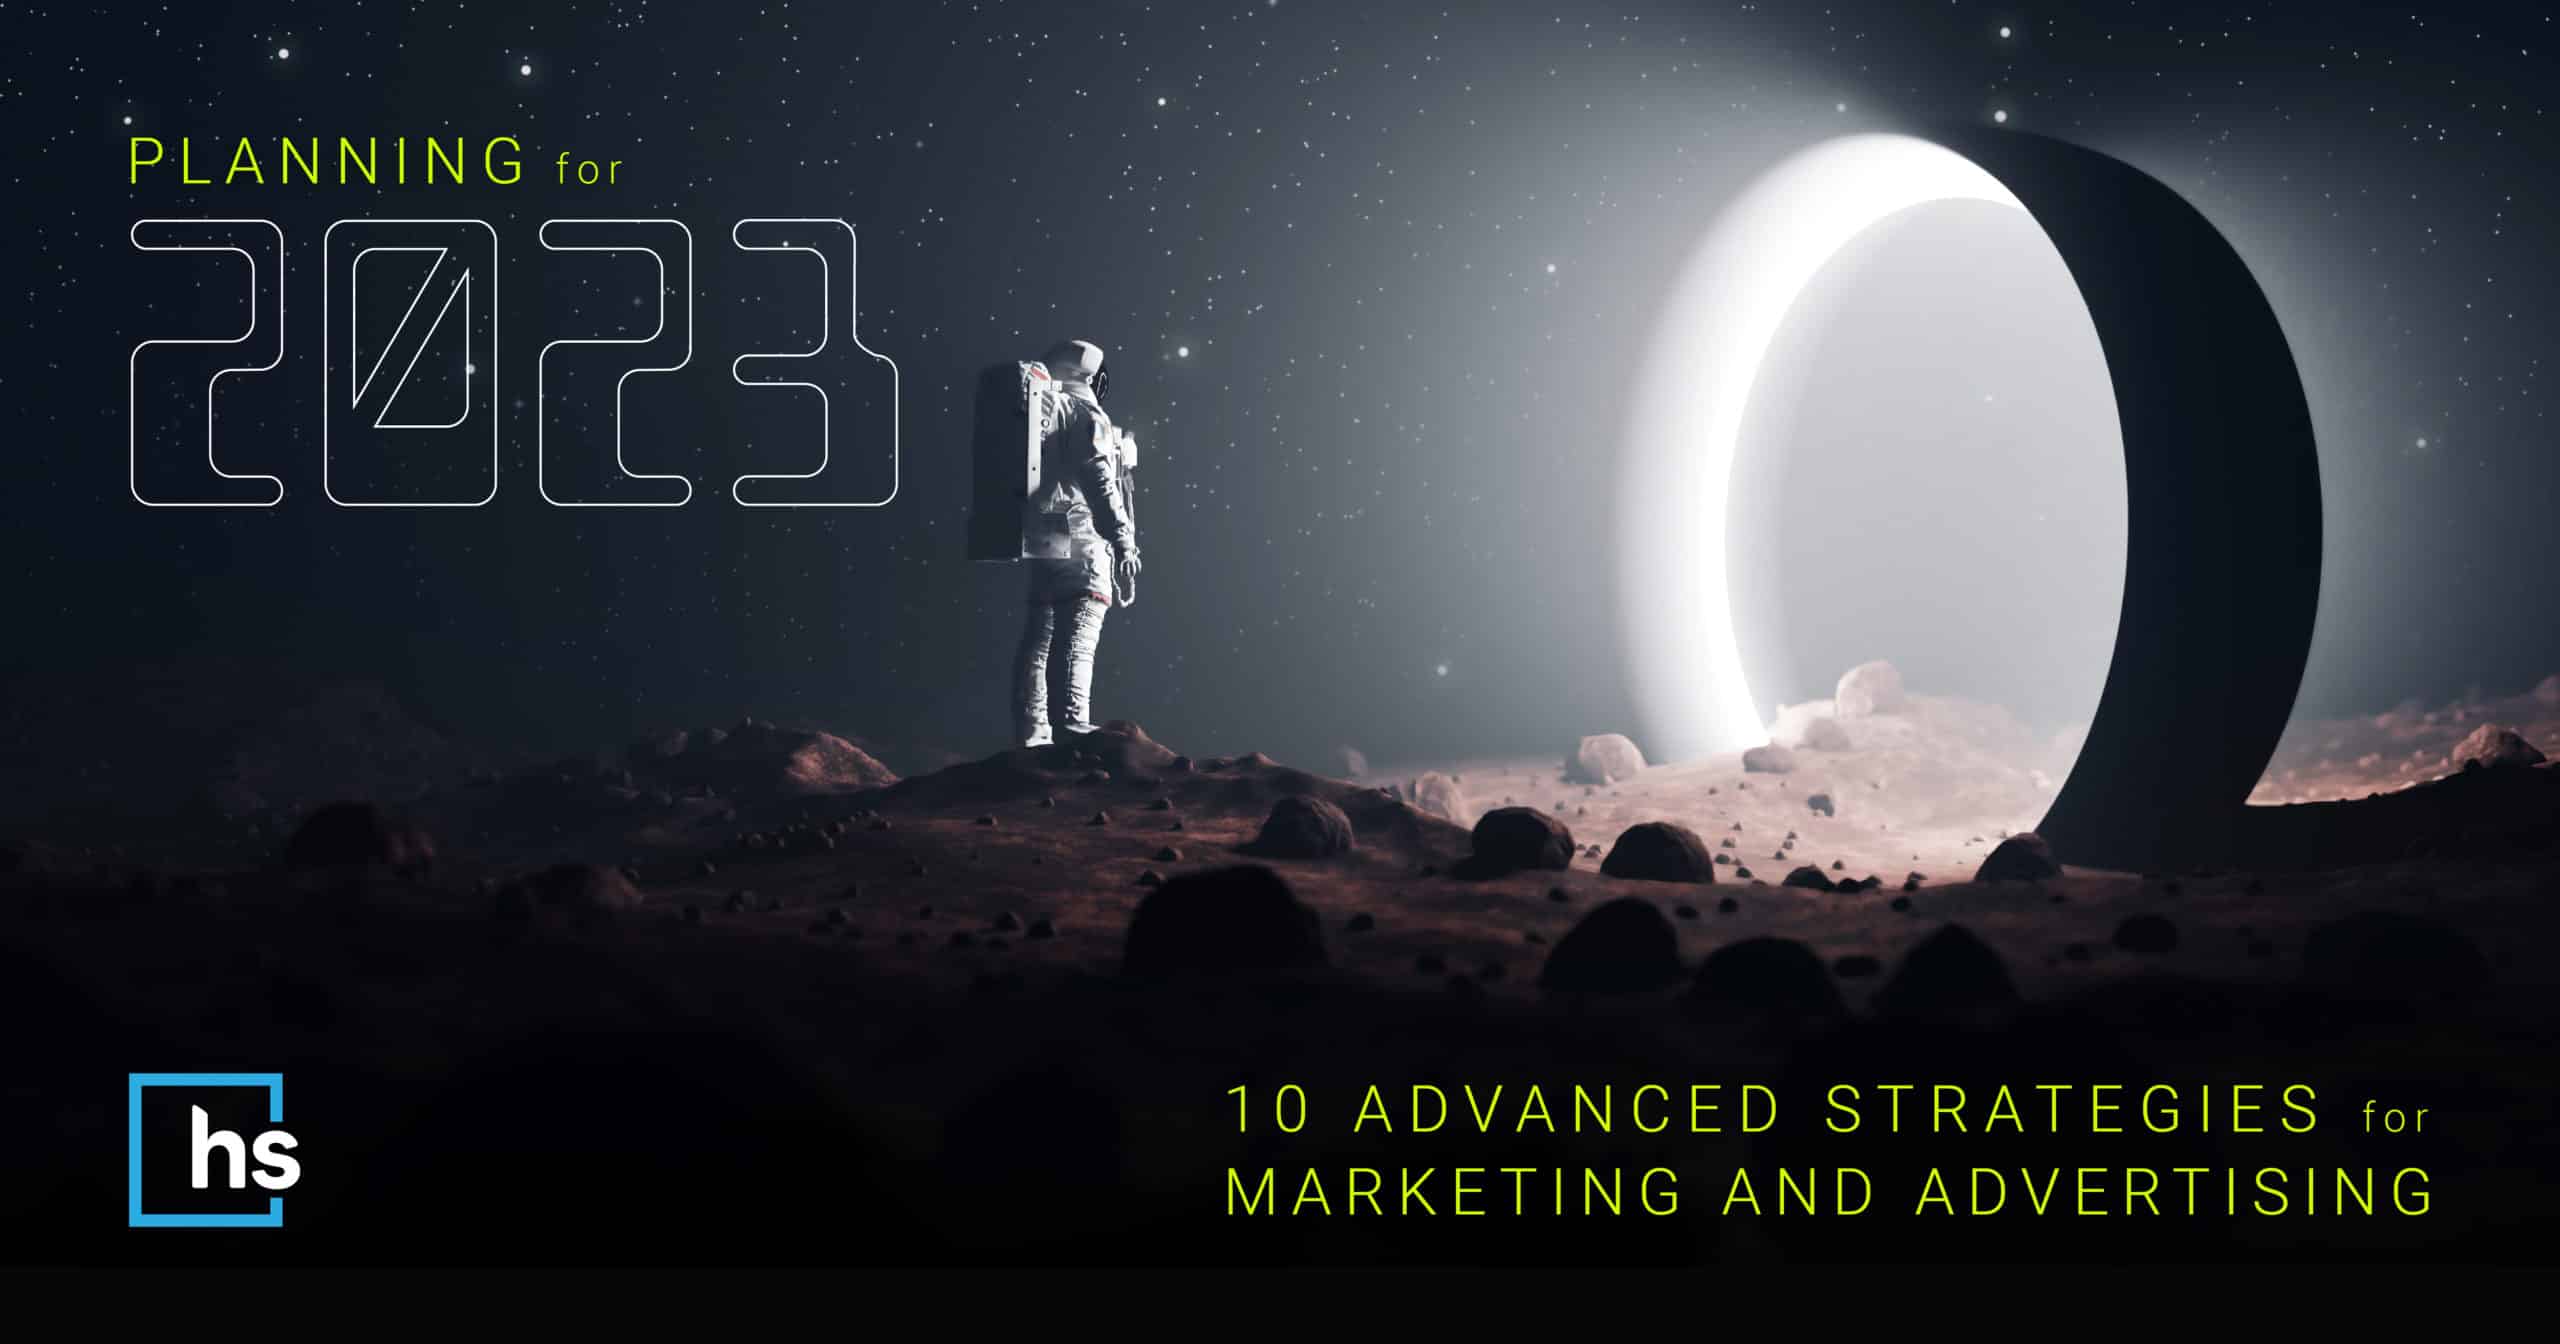 Planning for 2023 | 10 Digital Marketing & Advertising Strategies